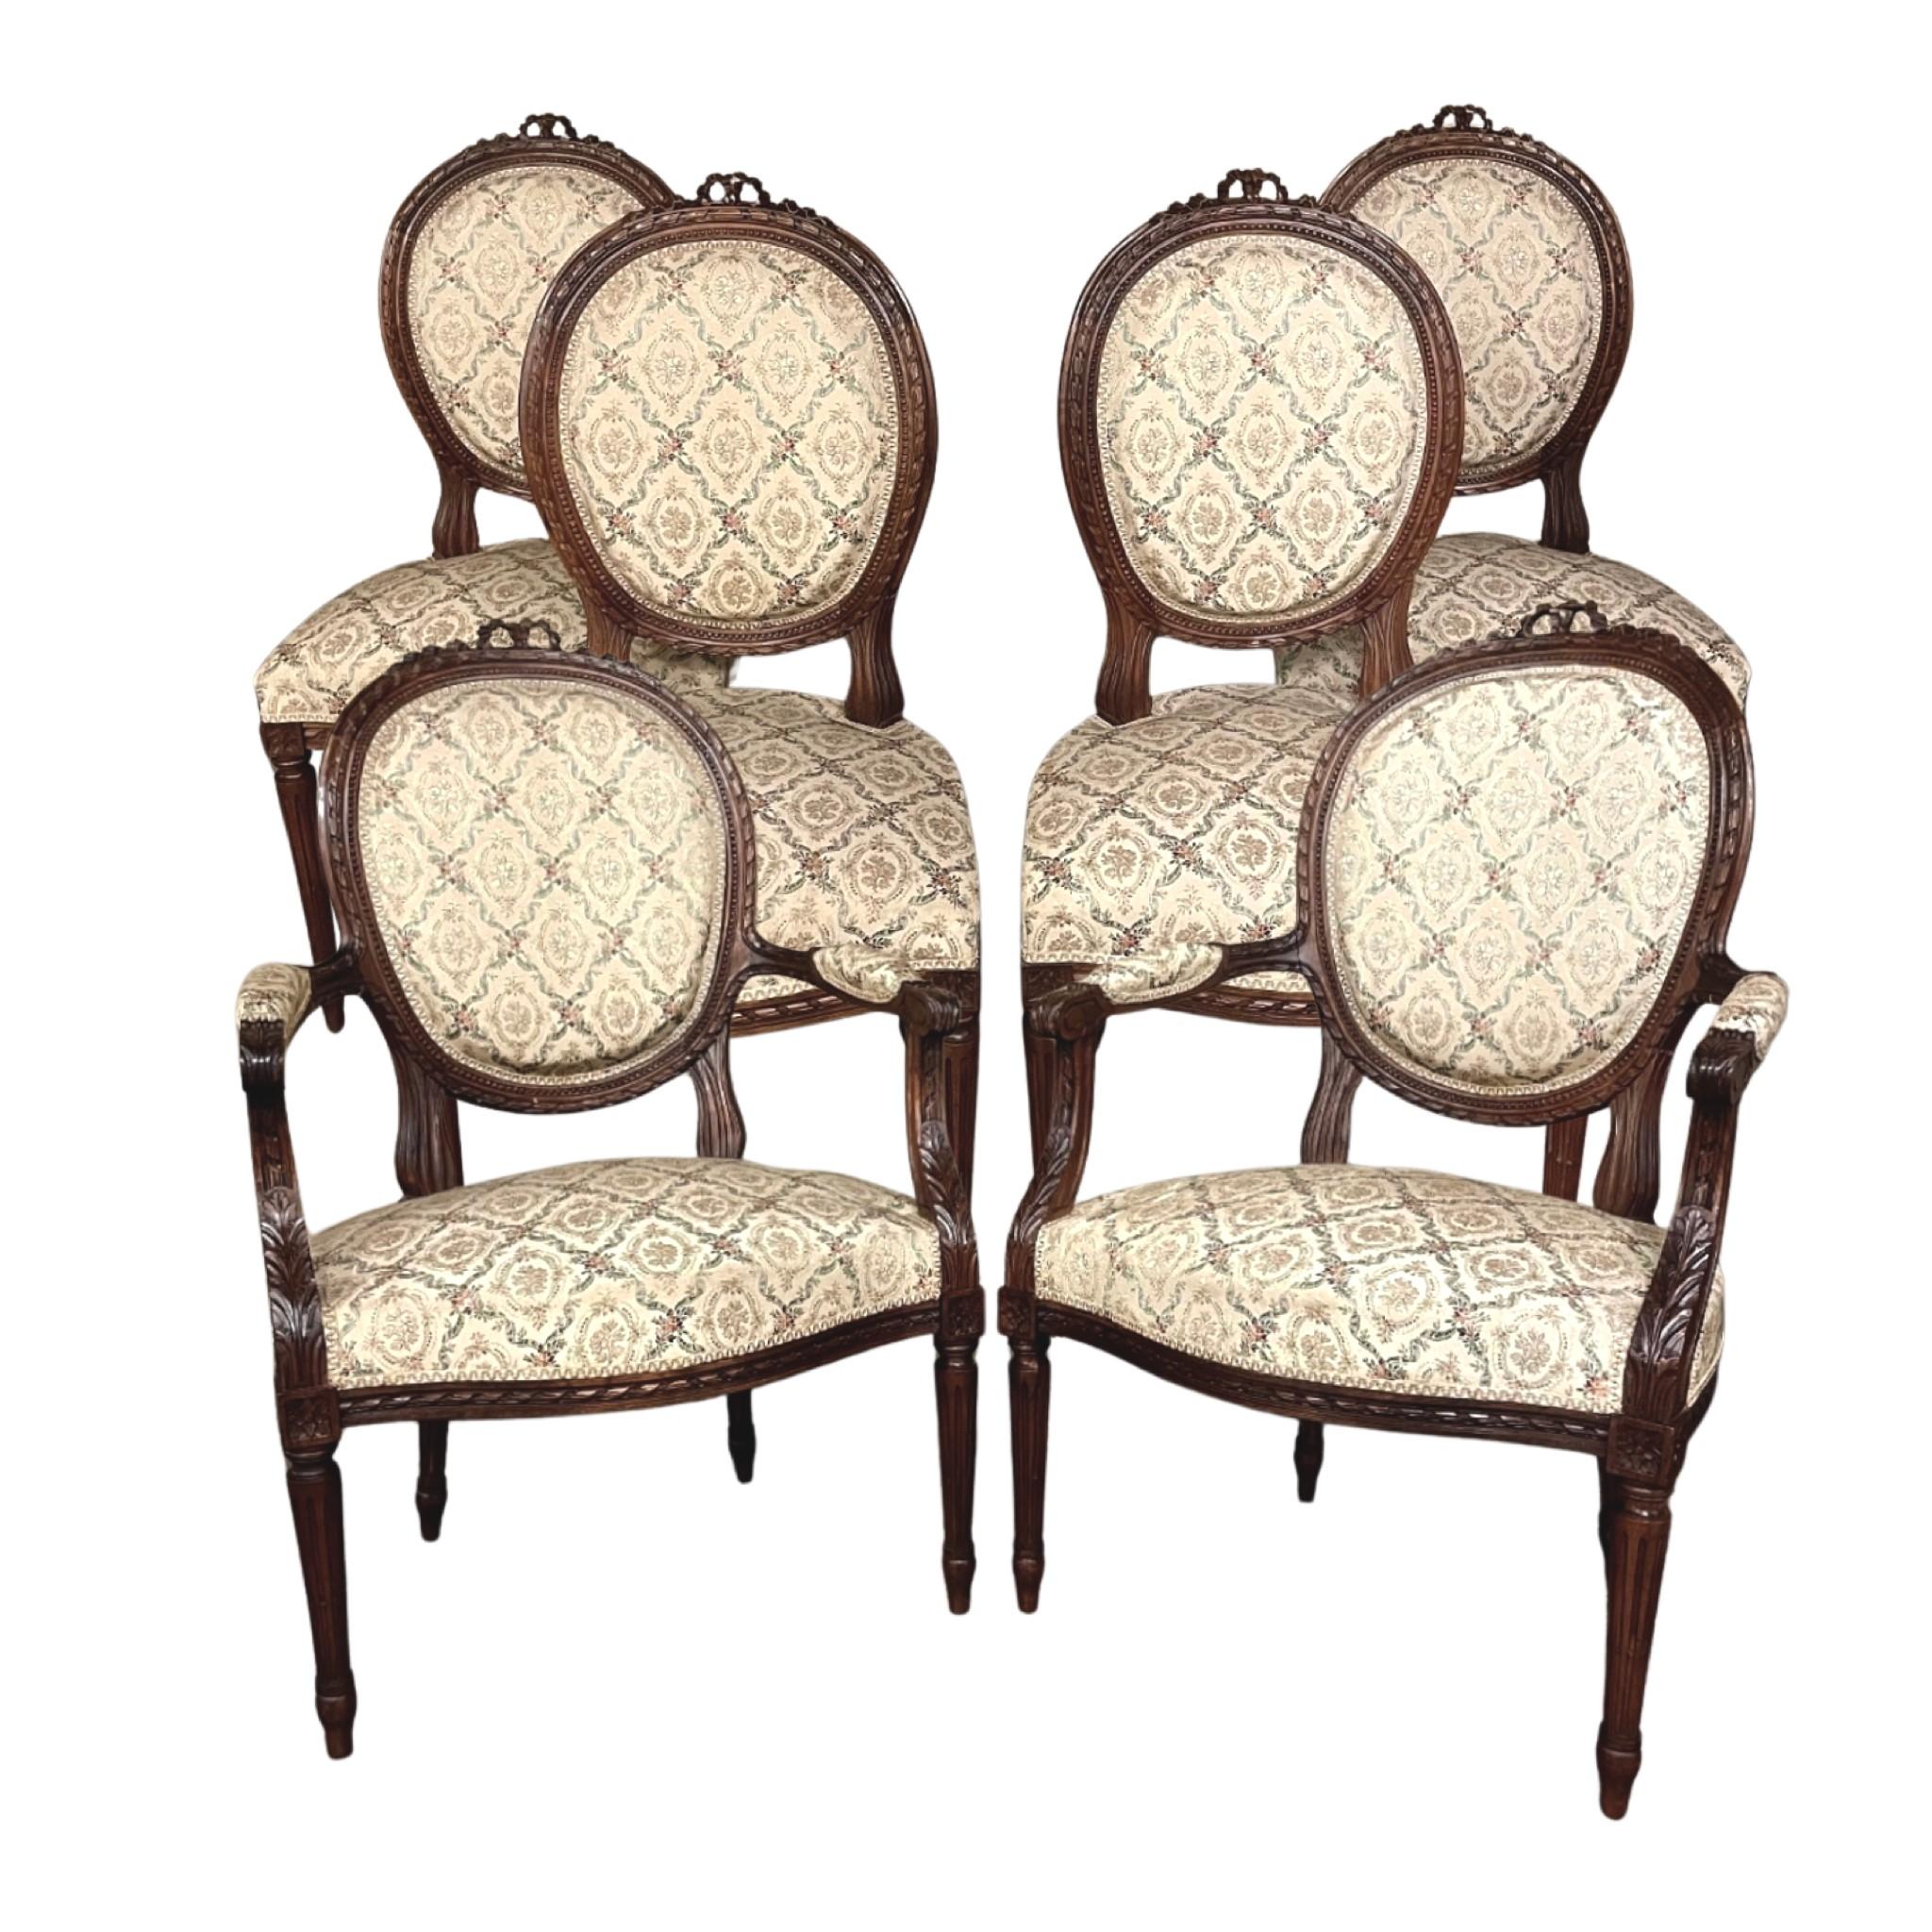 Das Set aus vier französischen Louis-XVI-Stühlen aus Nussbaumholz aus dem 19. Jahrhundert ist wirklich ein zeitloser Klassiker! Die geschwungenen, ovalen Rückenlehnen und die großzügigen Sitze bieten einen überraschenden Komfort, und die sehr hohe